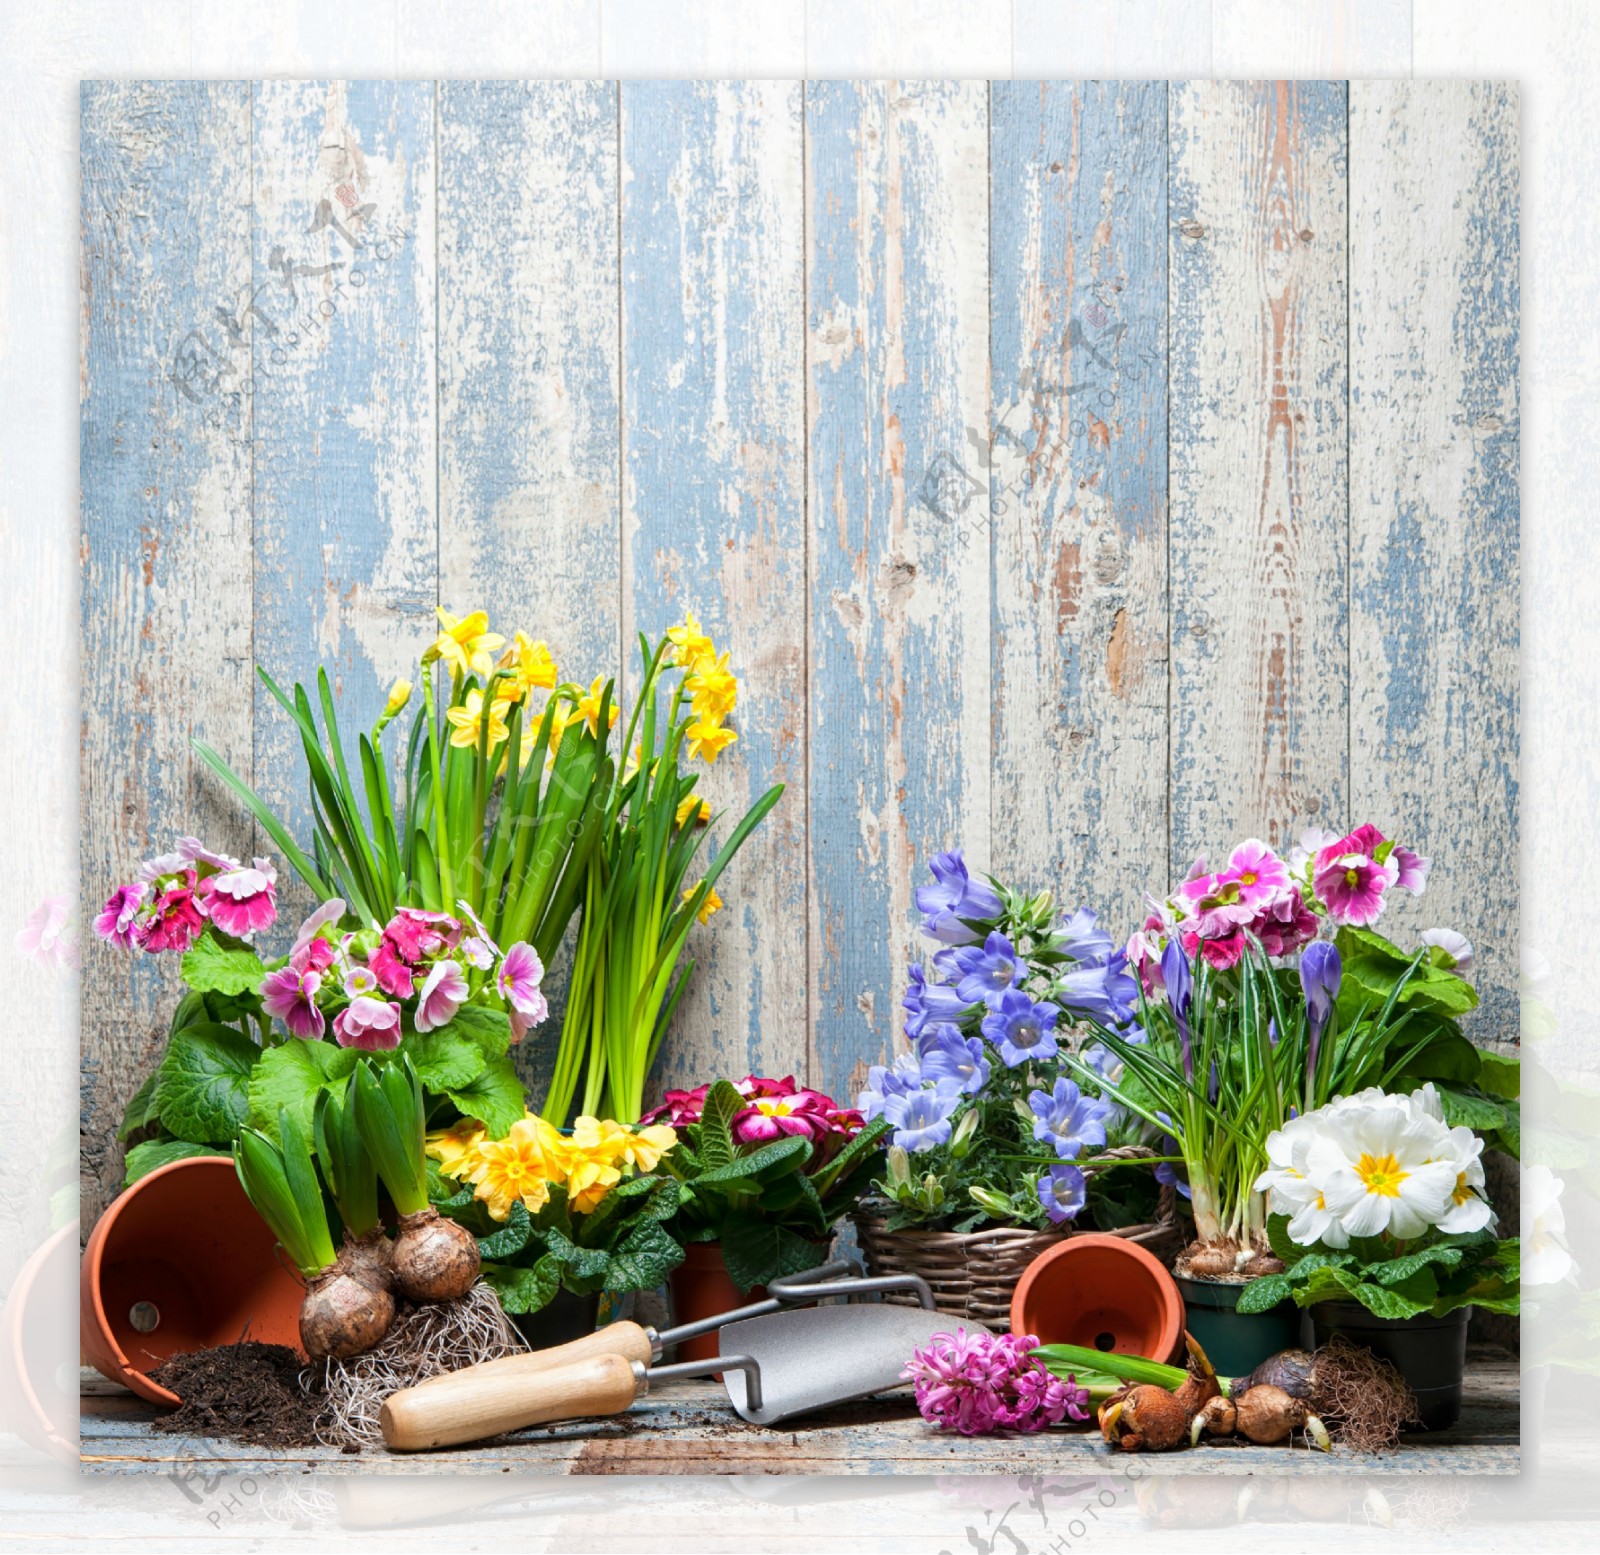 木板下的鲜花与园艺工具图片